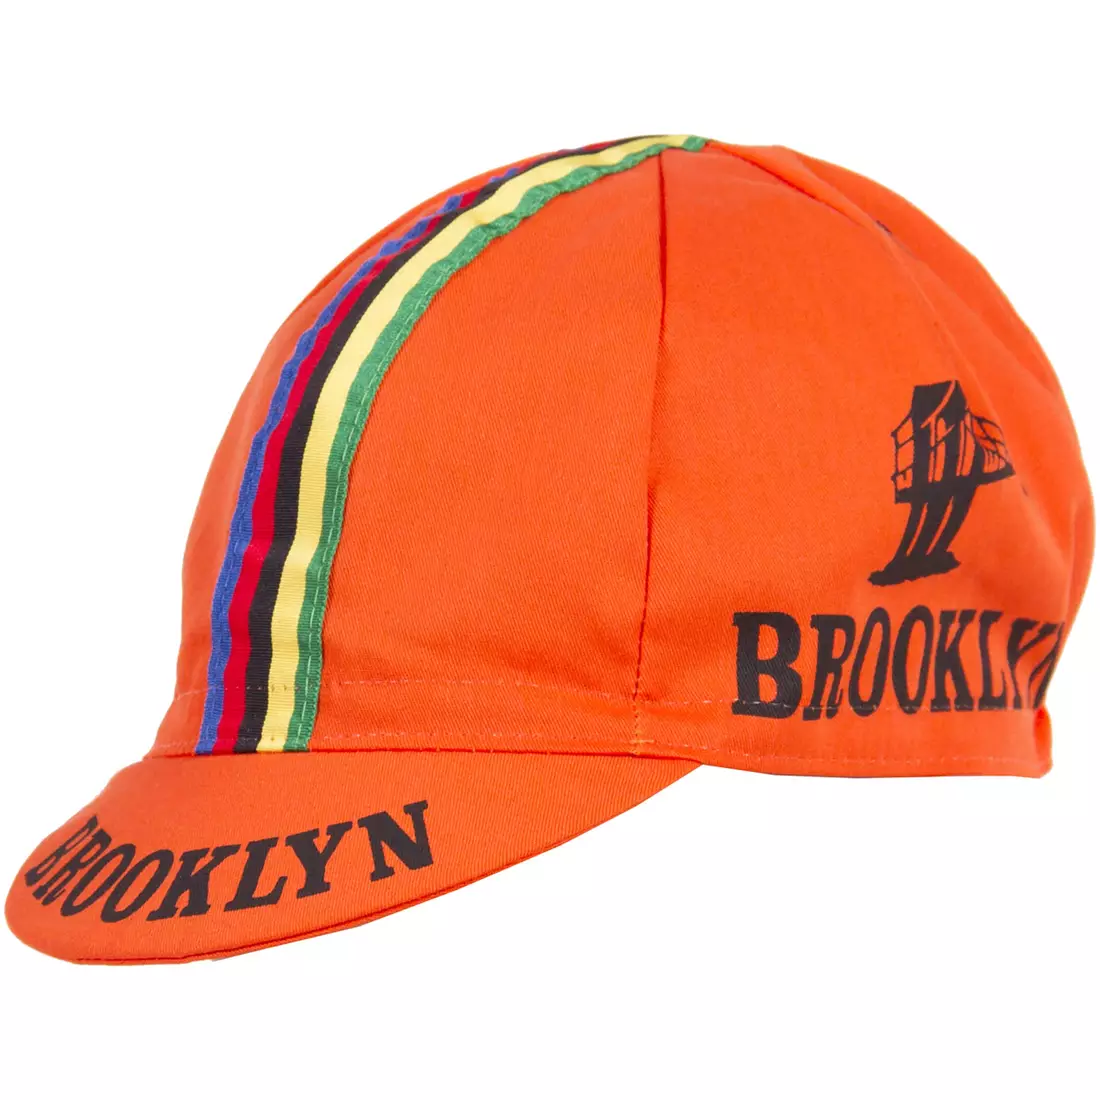 Cyklistická čiapka GIORDANA SS18 - Brooklyn - Oranžová s pásikom GI-S6-COCA-BROK-ORAN jedna veľ.